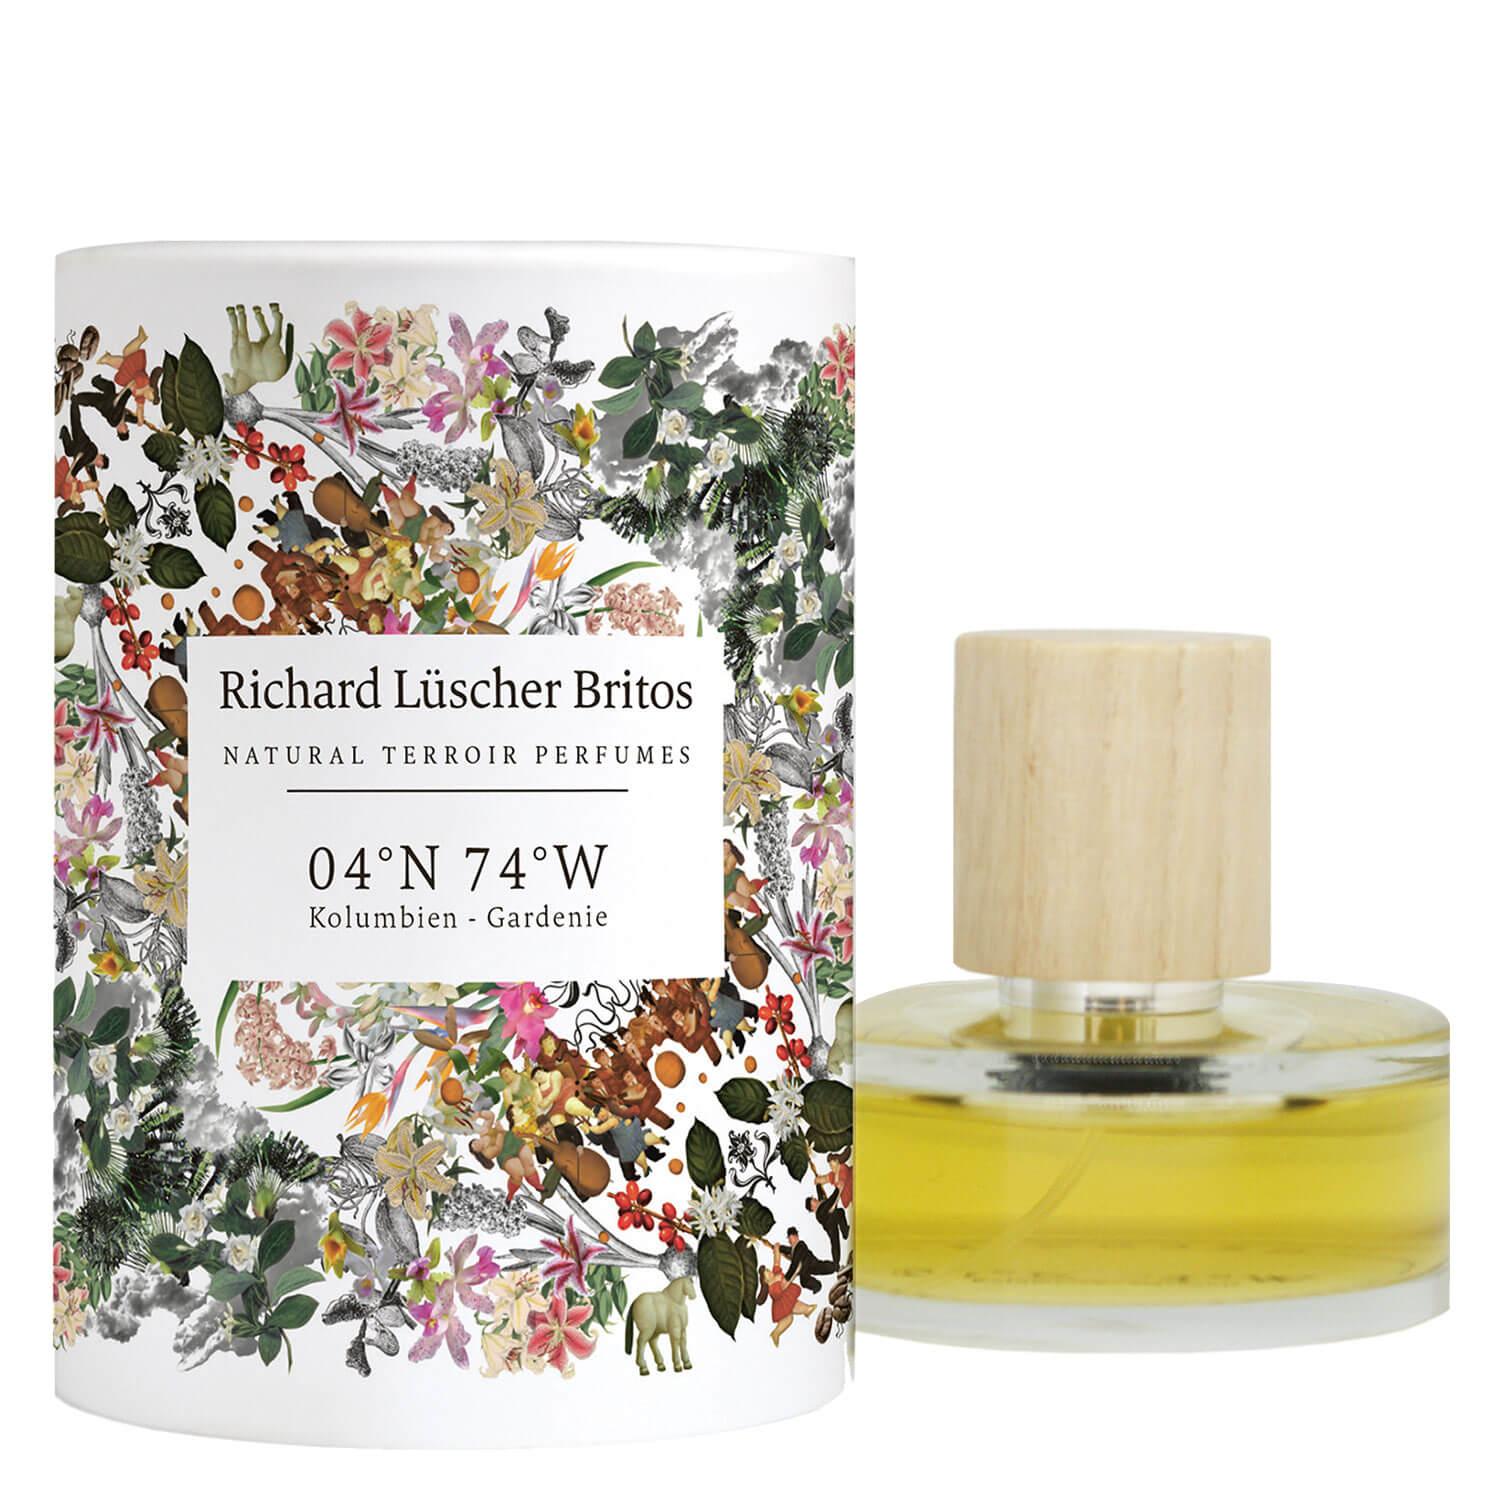 Farfalla Fragrance - 04°N 74°W Colombie Gardenie Natural Terroir Parfum